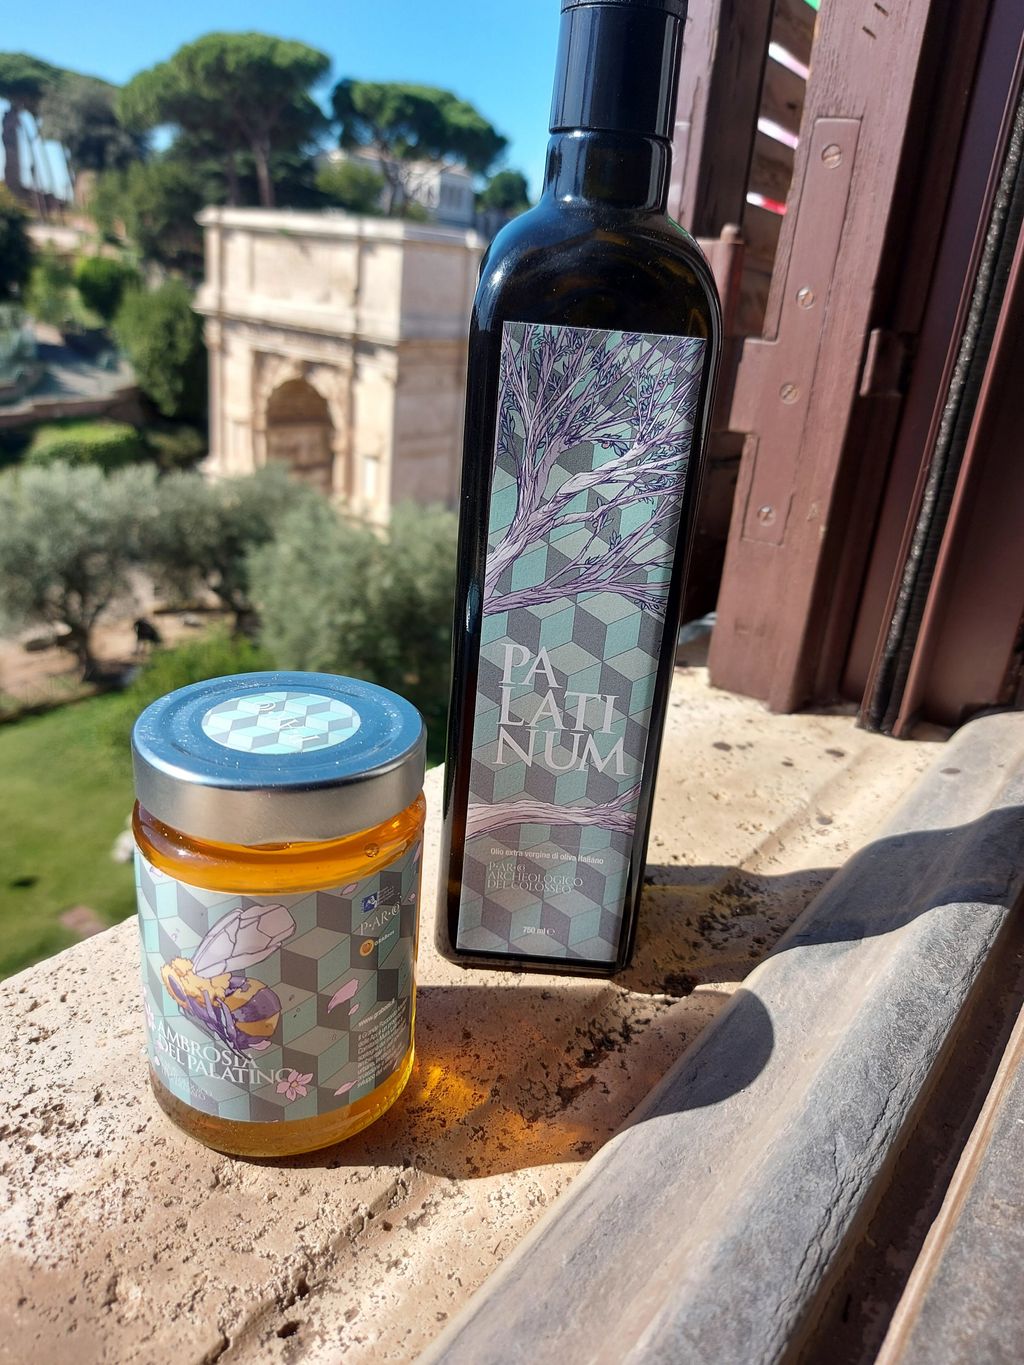 Miele prodotto nel Parco archeologico del Colosseo&nbsp;